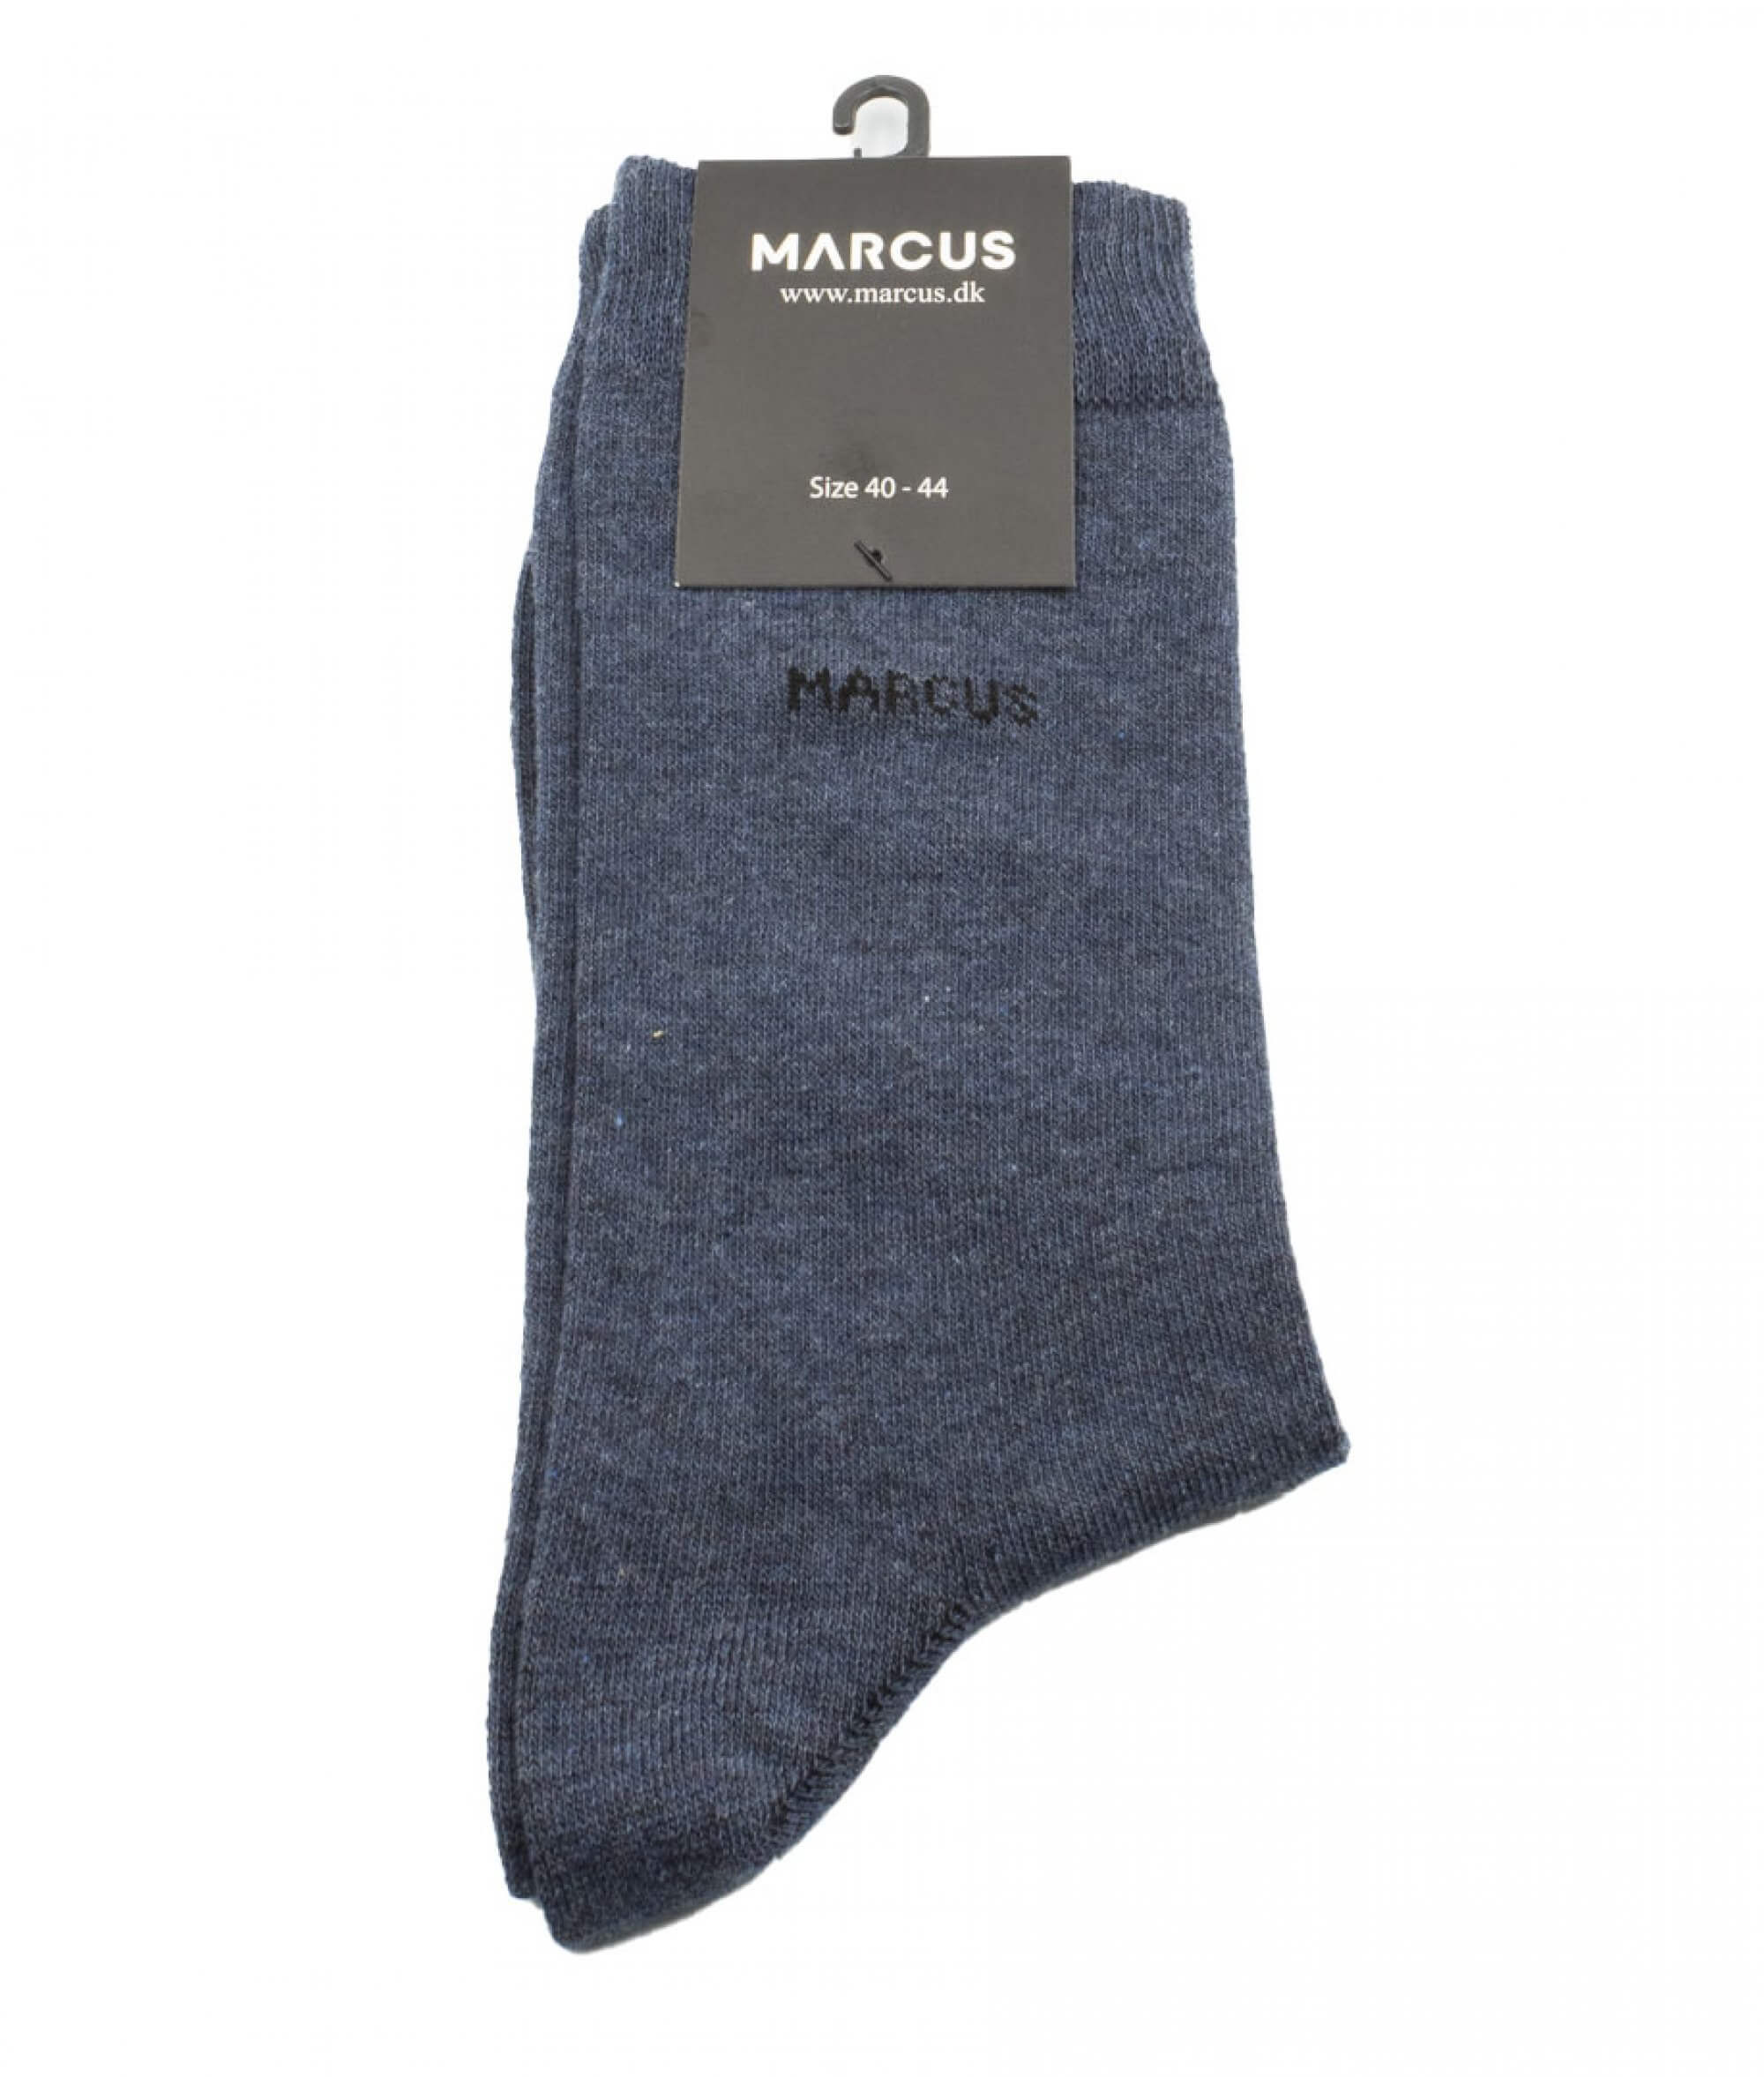 Marcus Κάλτσα MA Socks